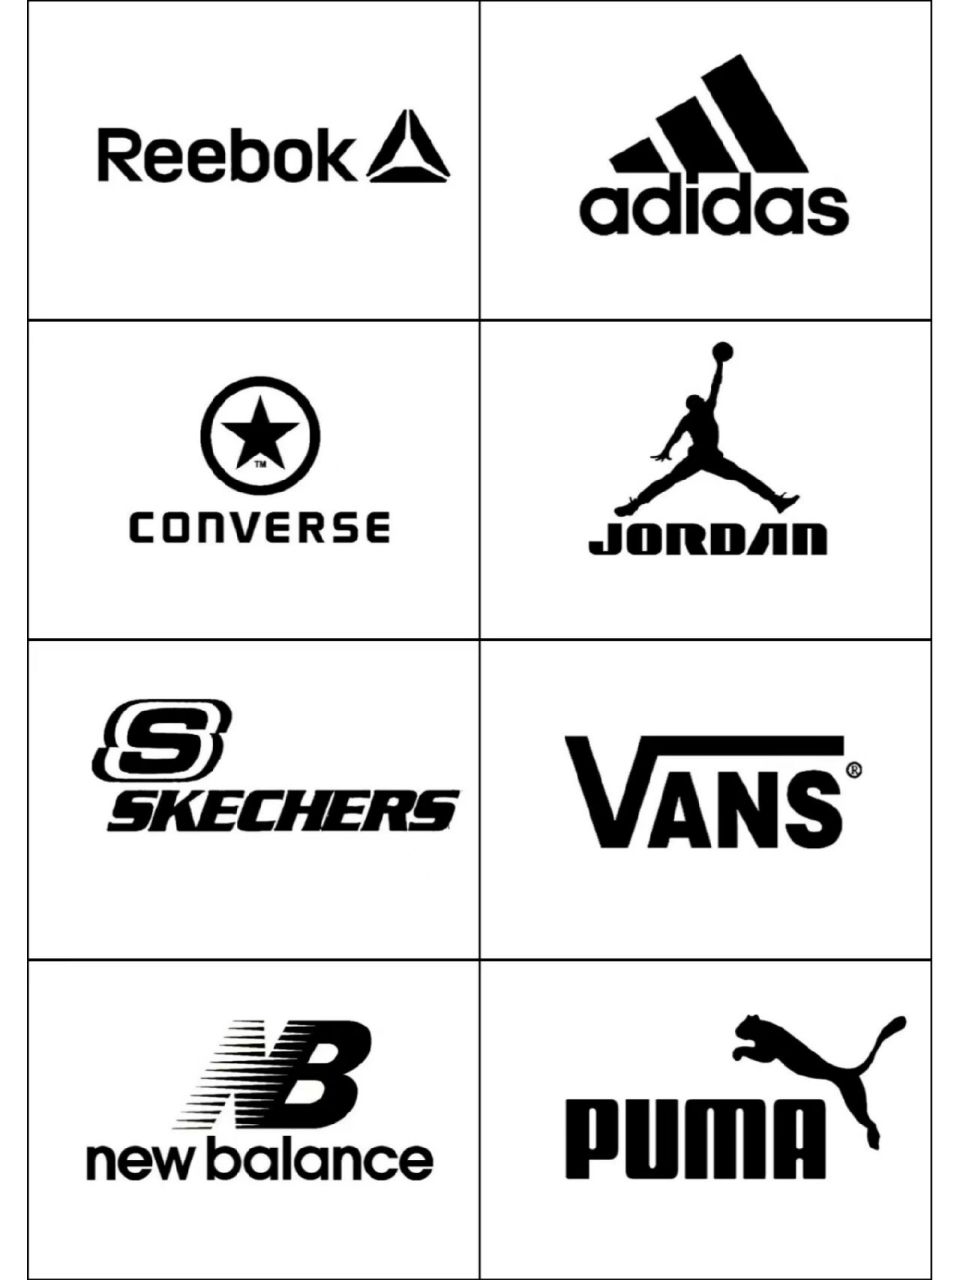 分享一组知名运动品牌的logo设计,你认识吗 知名品牌的logo设计案例